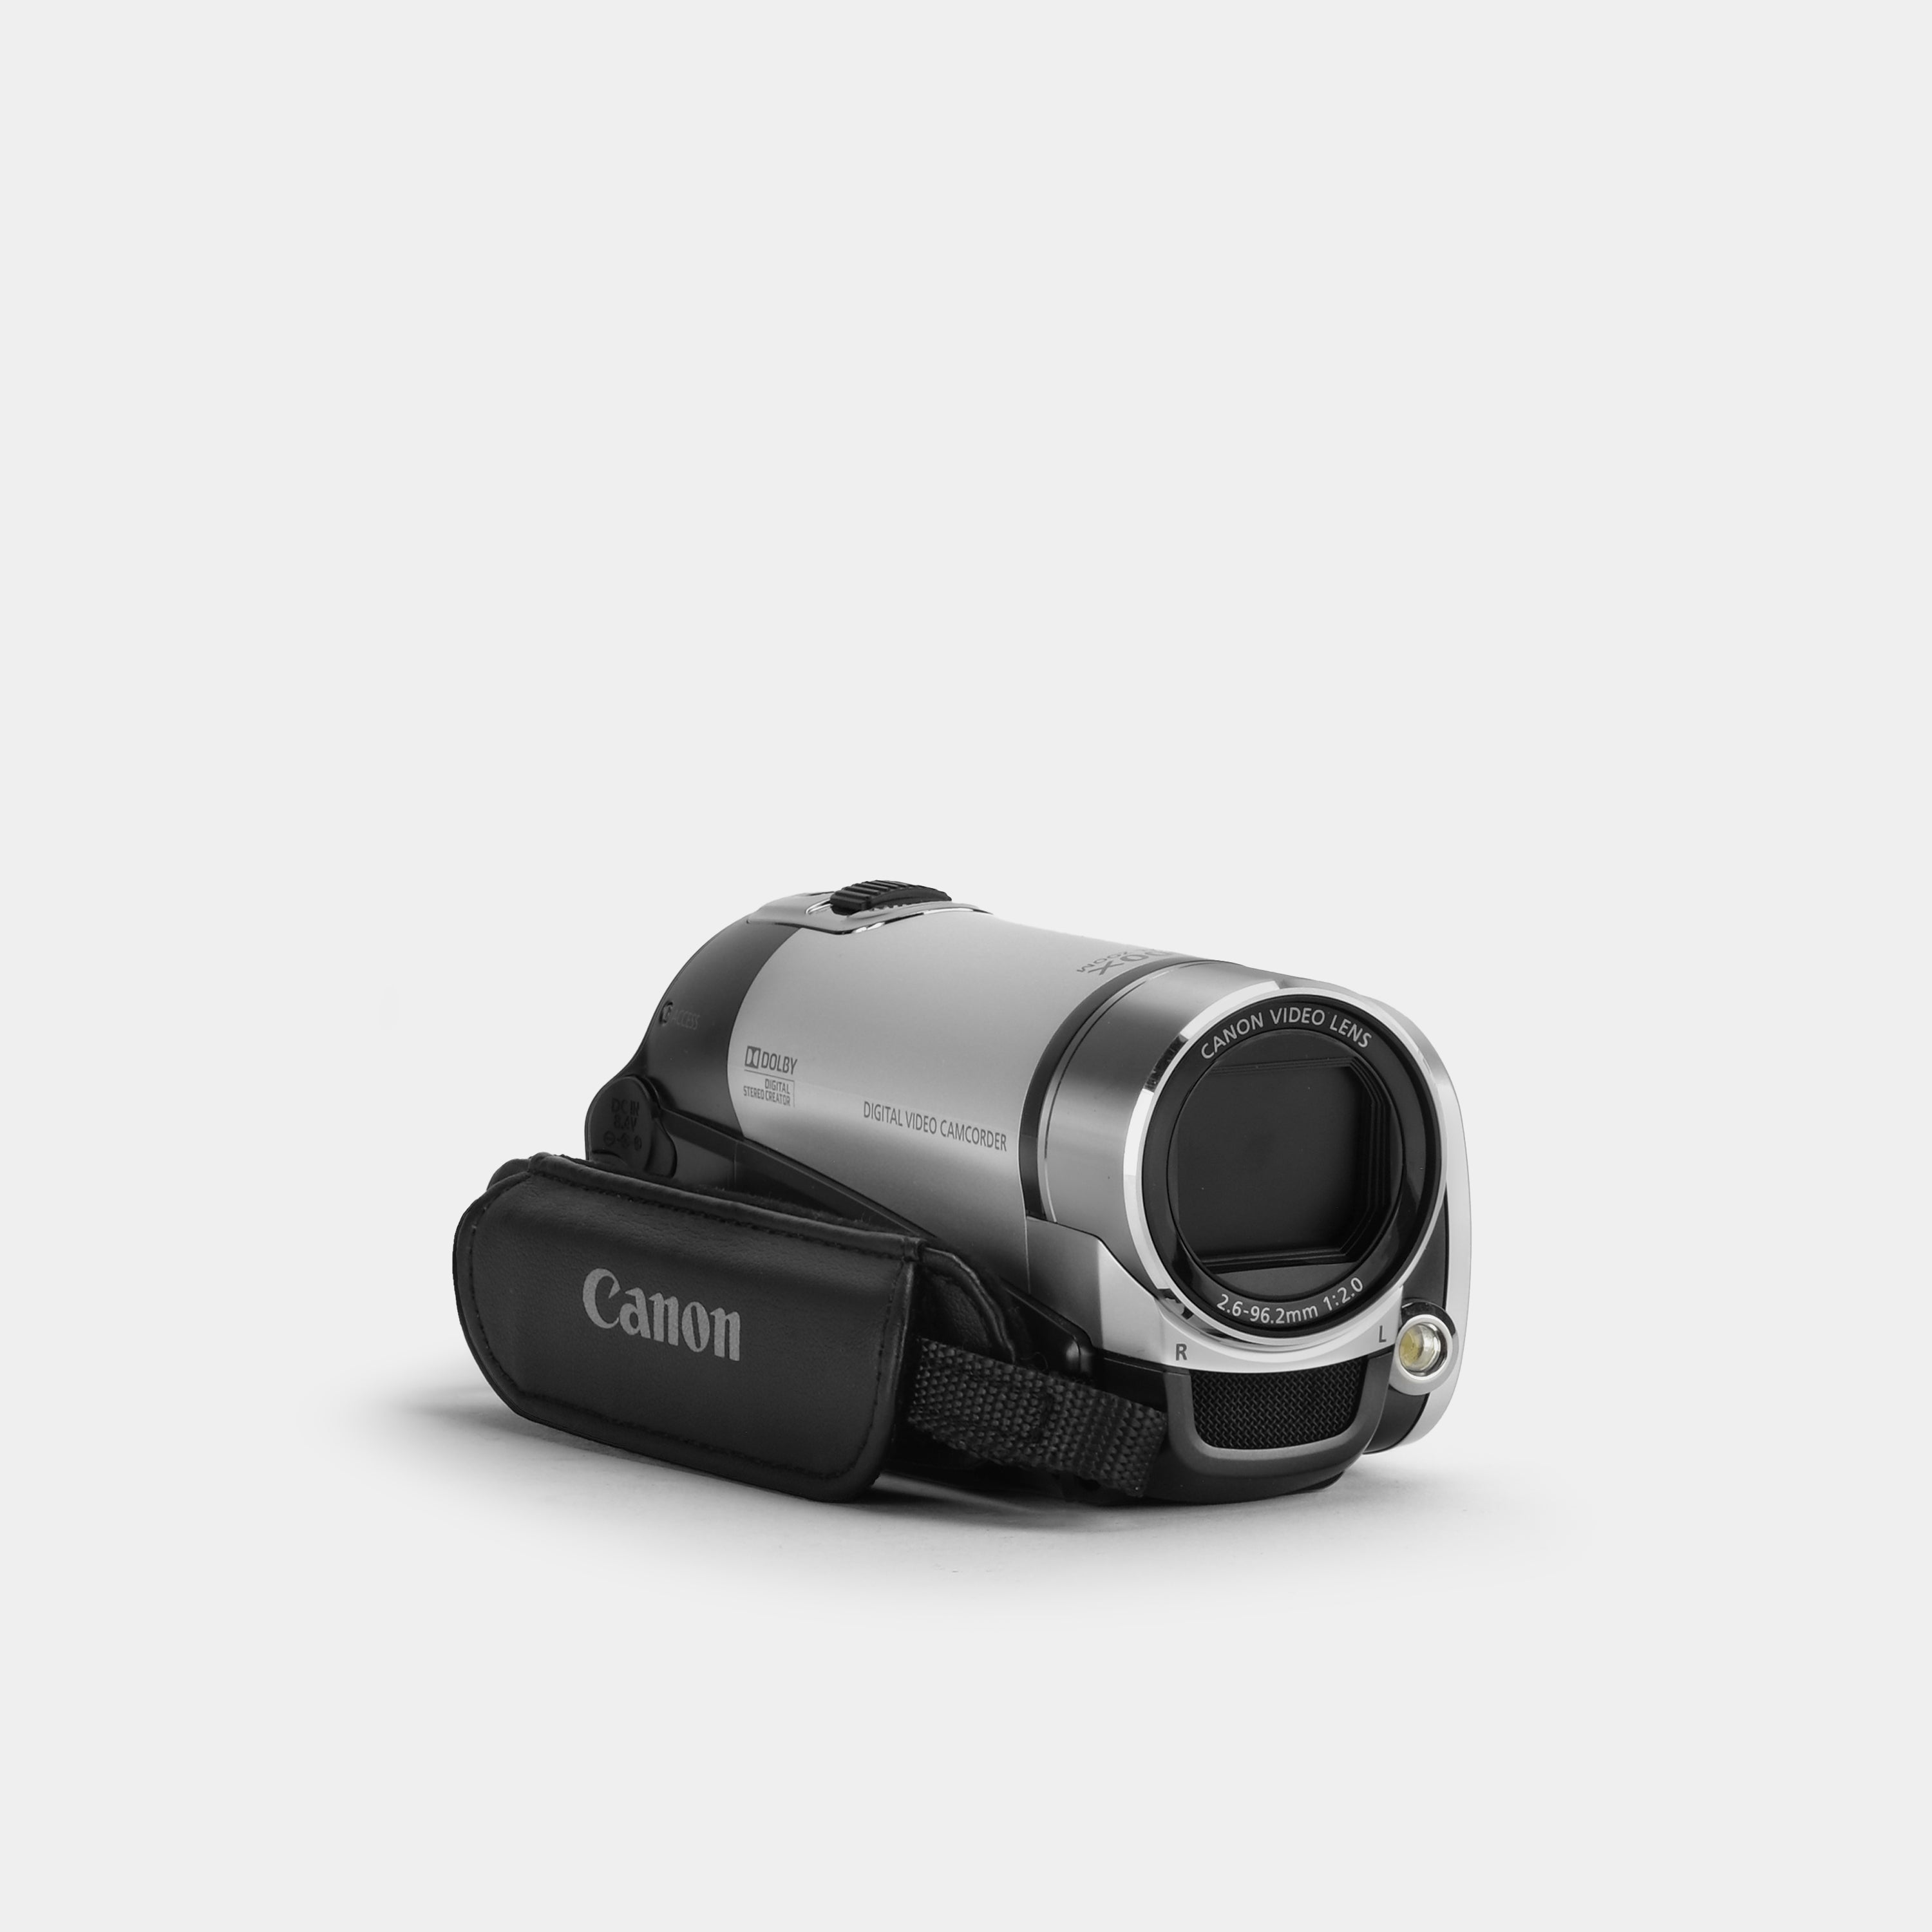 Canon FS200 Digital Video Camcorder